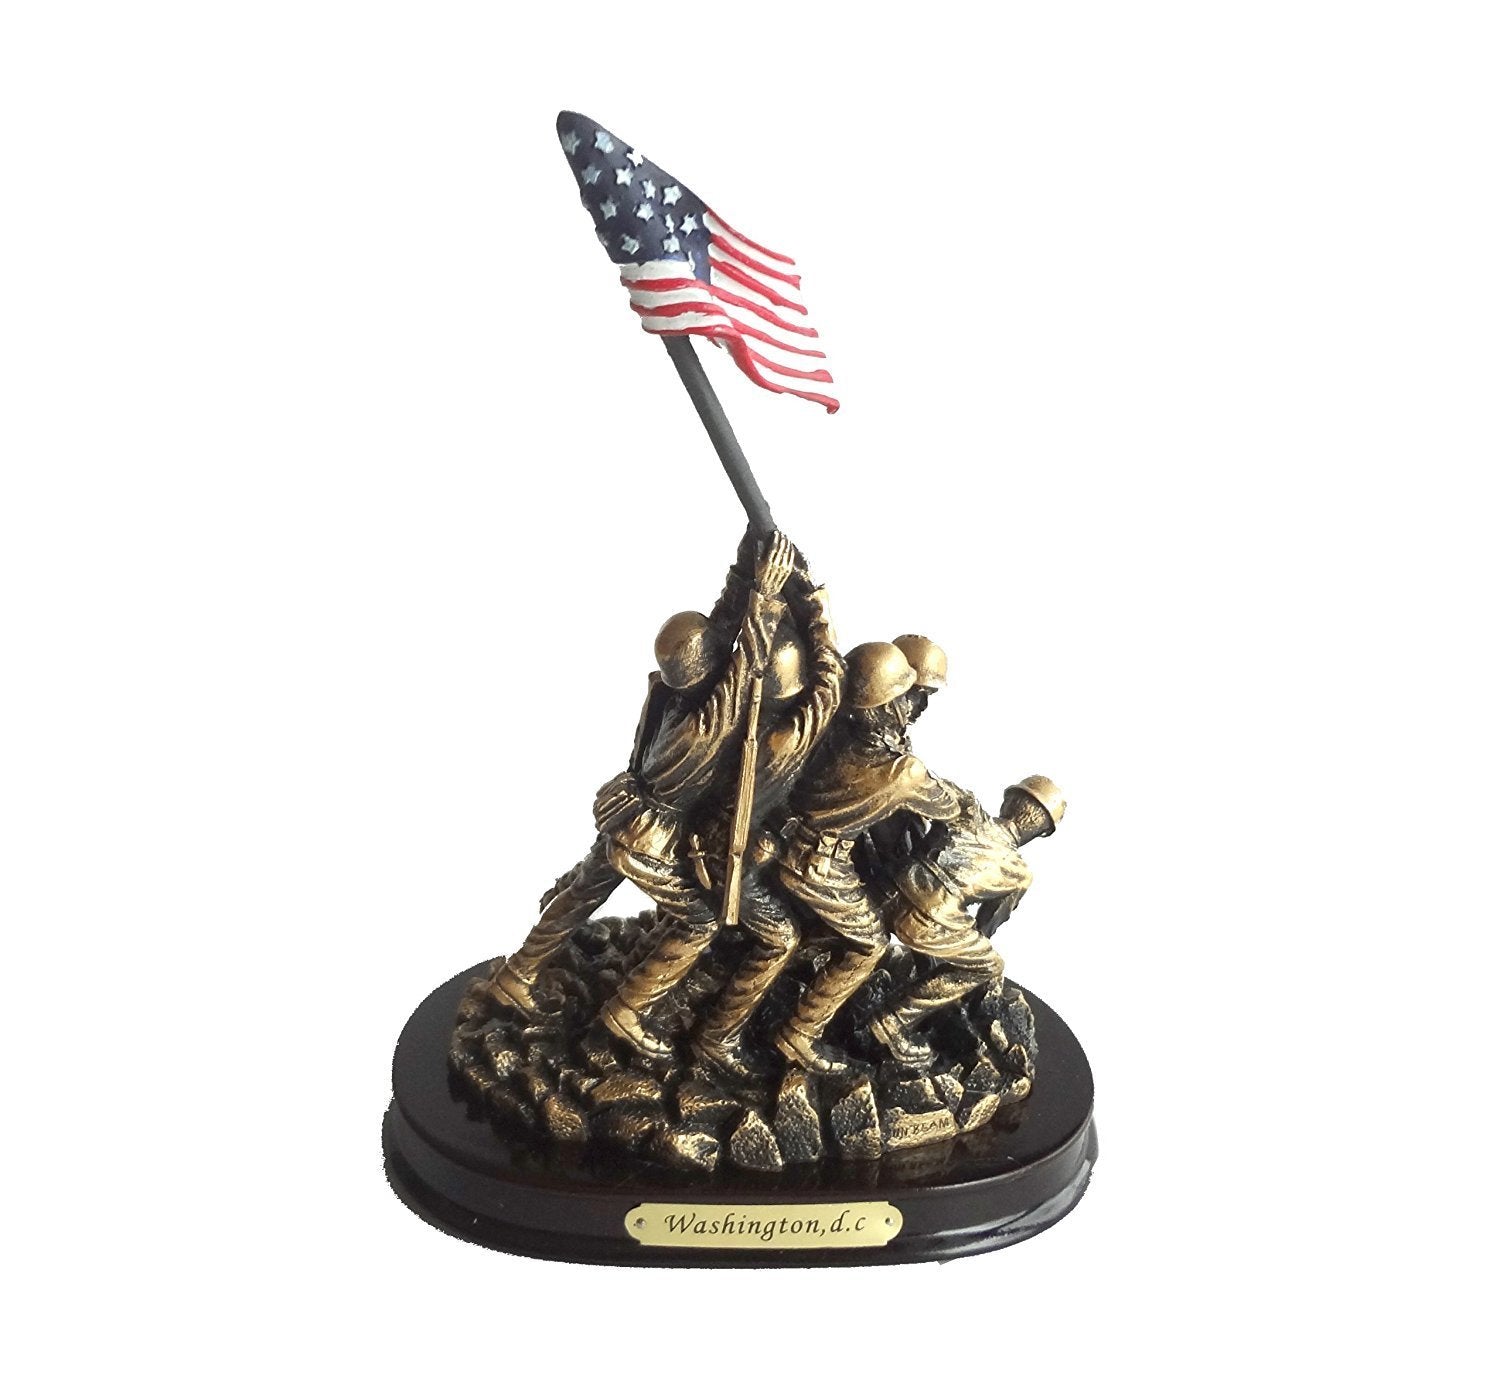 U.S. Marine Corps Statue of Iwo Jima Flag Raising